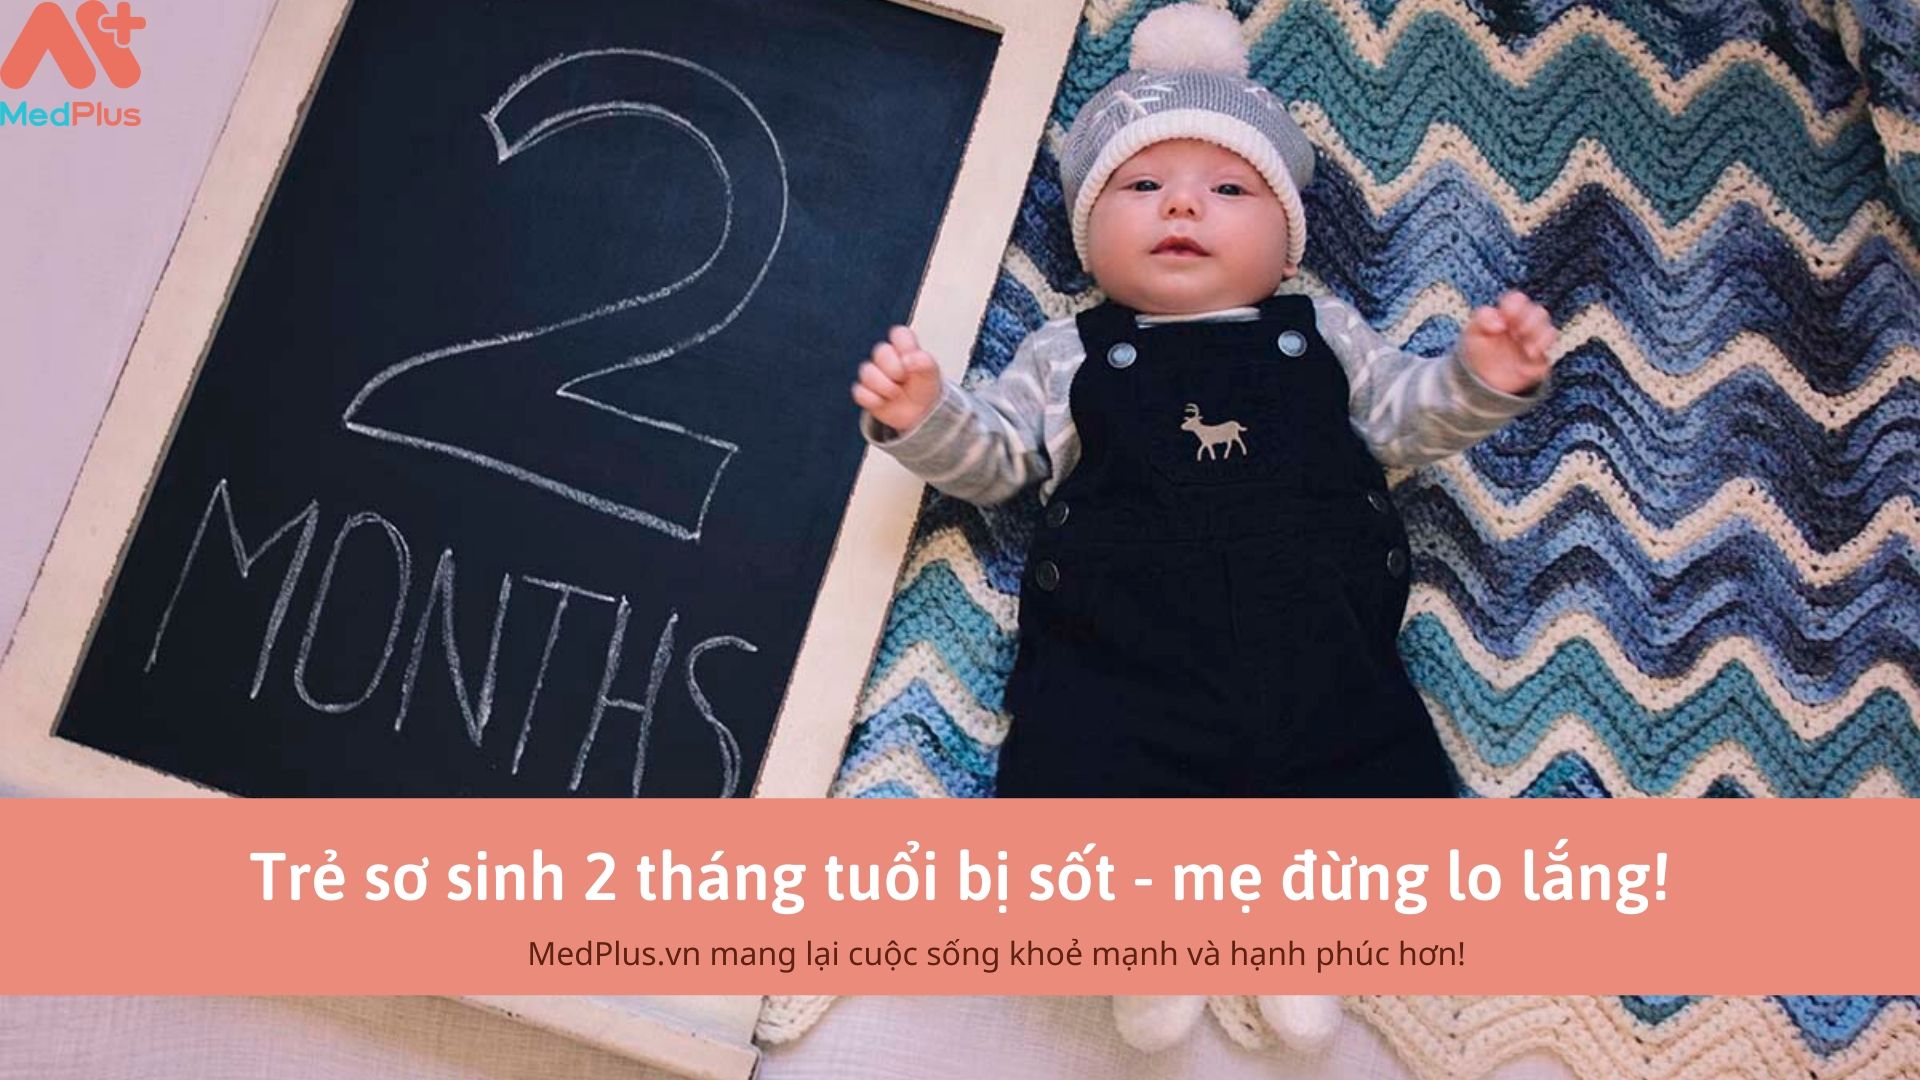 Trẻ sơ sinh 2 tháng tuổi bị sốt - mẹ đừng lo lắng!